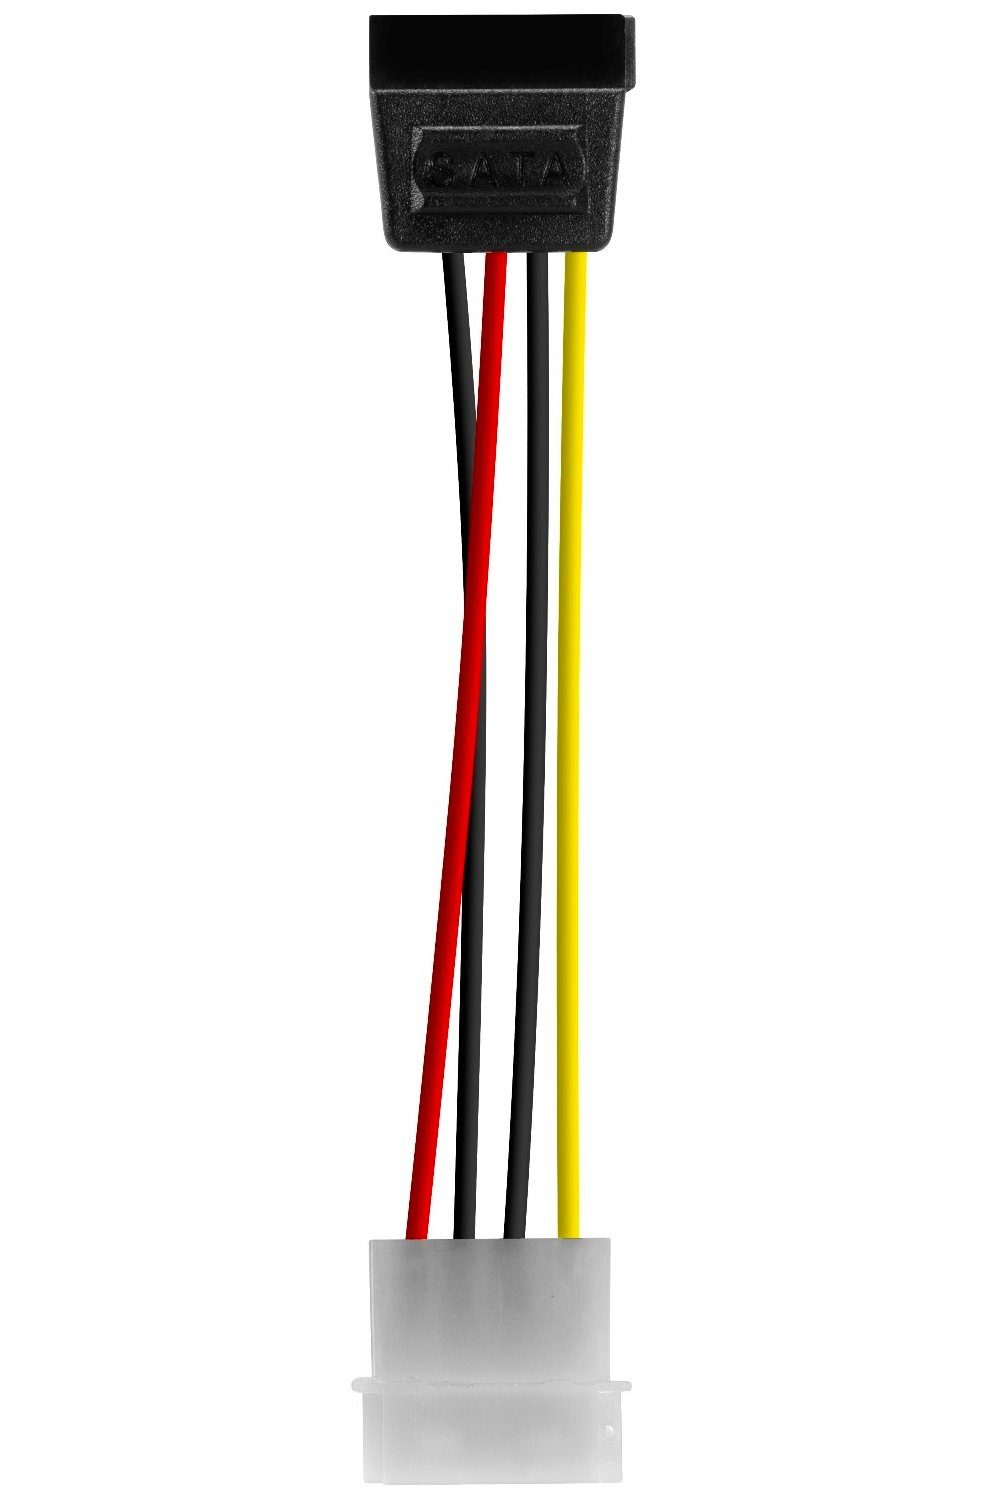 Stecker PATA/IDE-Molex-Stromstecker,SATA-Stromstecker Strom-Kabel 5,25" SATA PC zu IDE Speedlink 15-polig Speedlink Adapter Stromkabel,